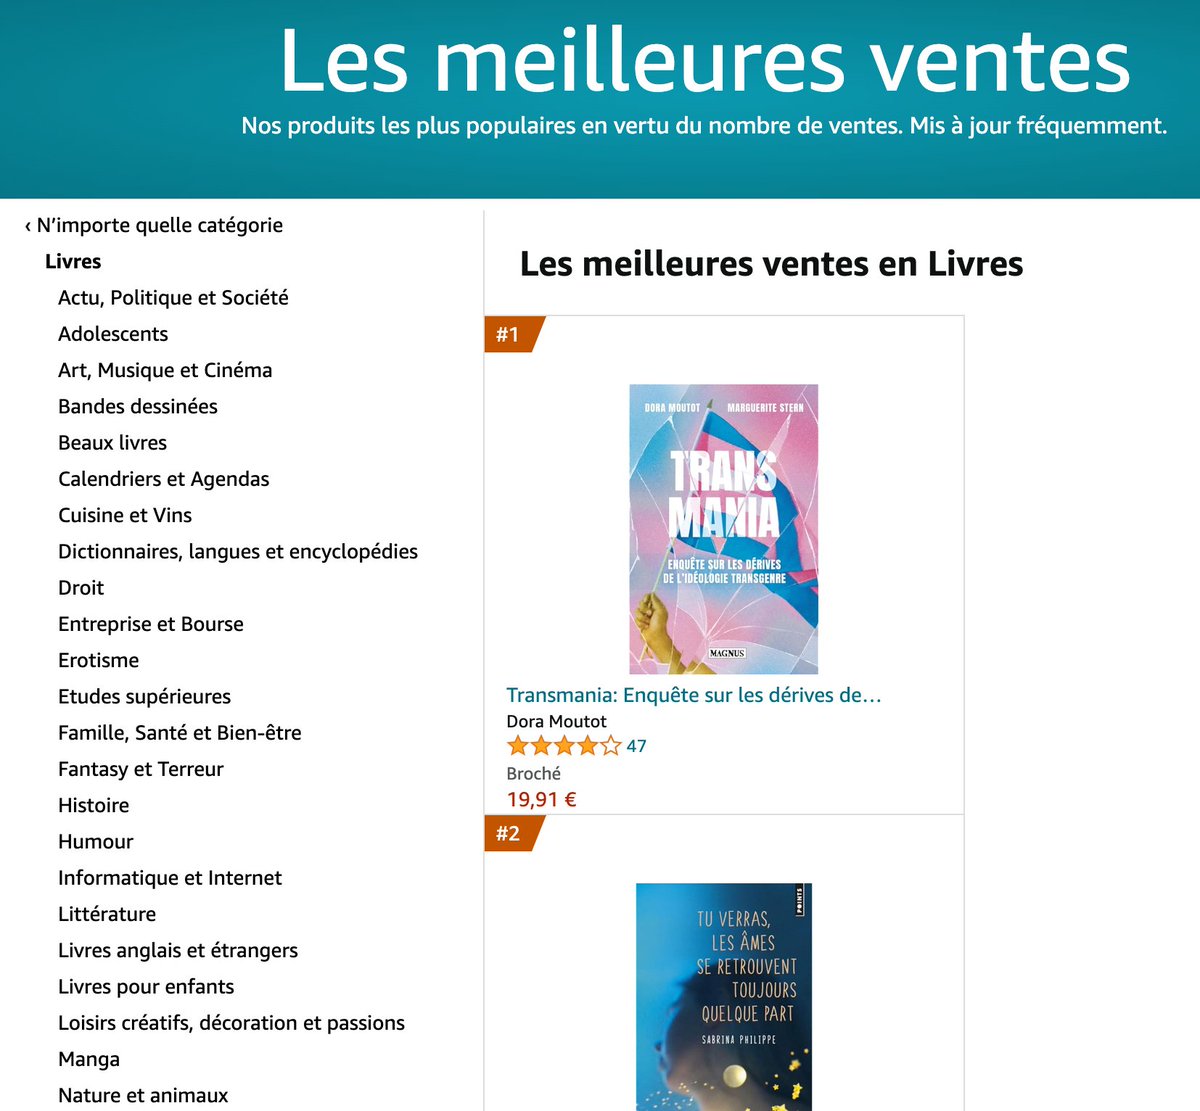 Le livre #transmania est devenu n°1 des ventes sur amazon suite à la censure des publicités du livre par la Mairie de Paris